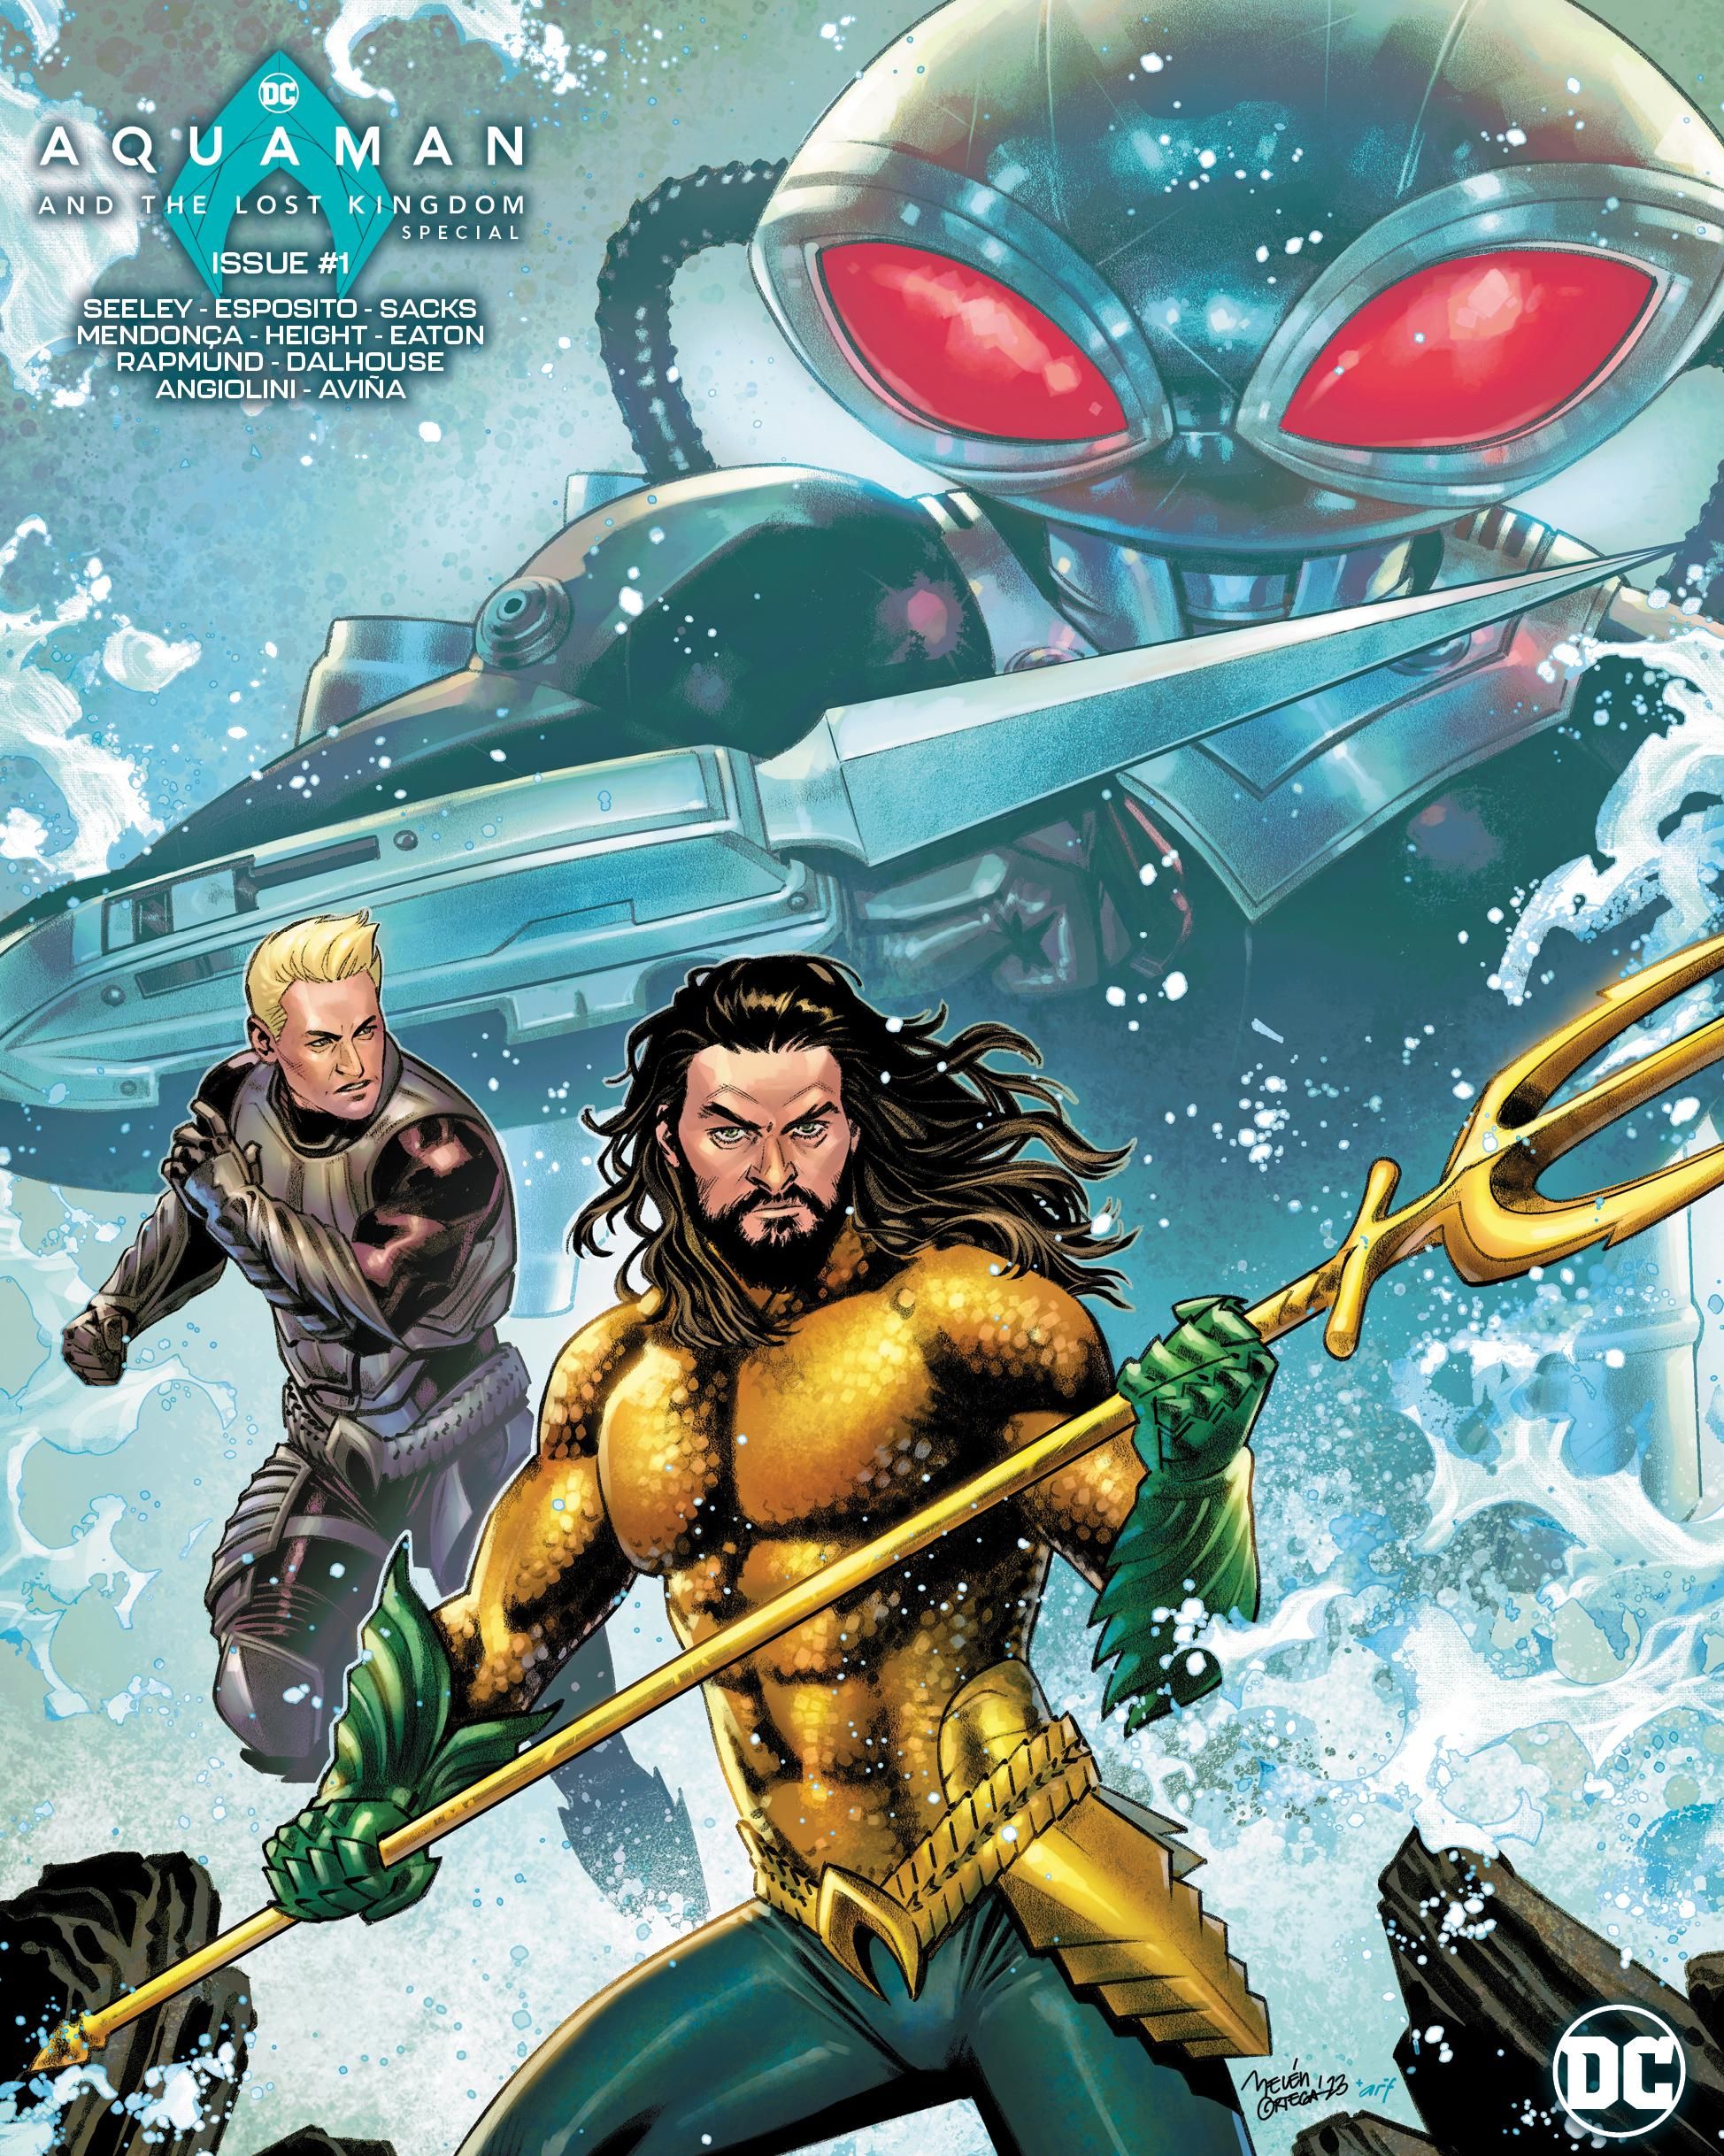 Aquaman 2 comic book prequel variant cover